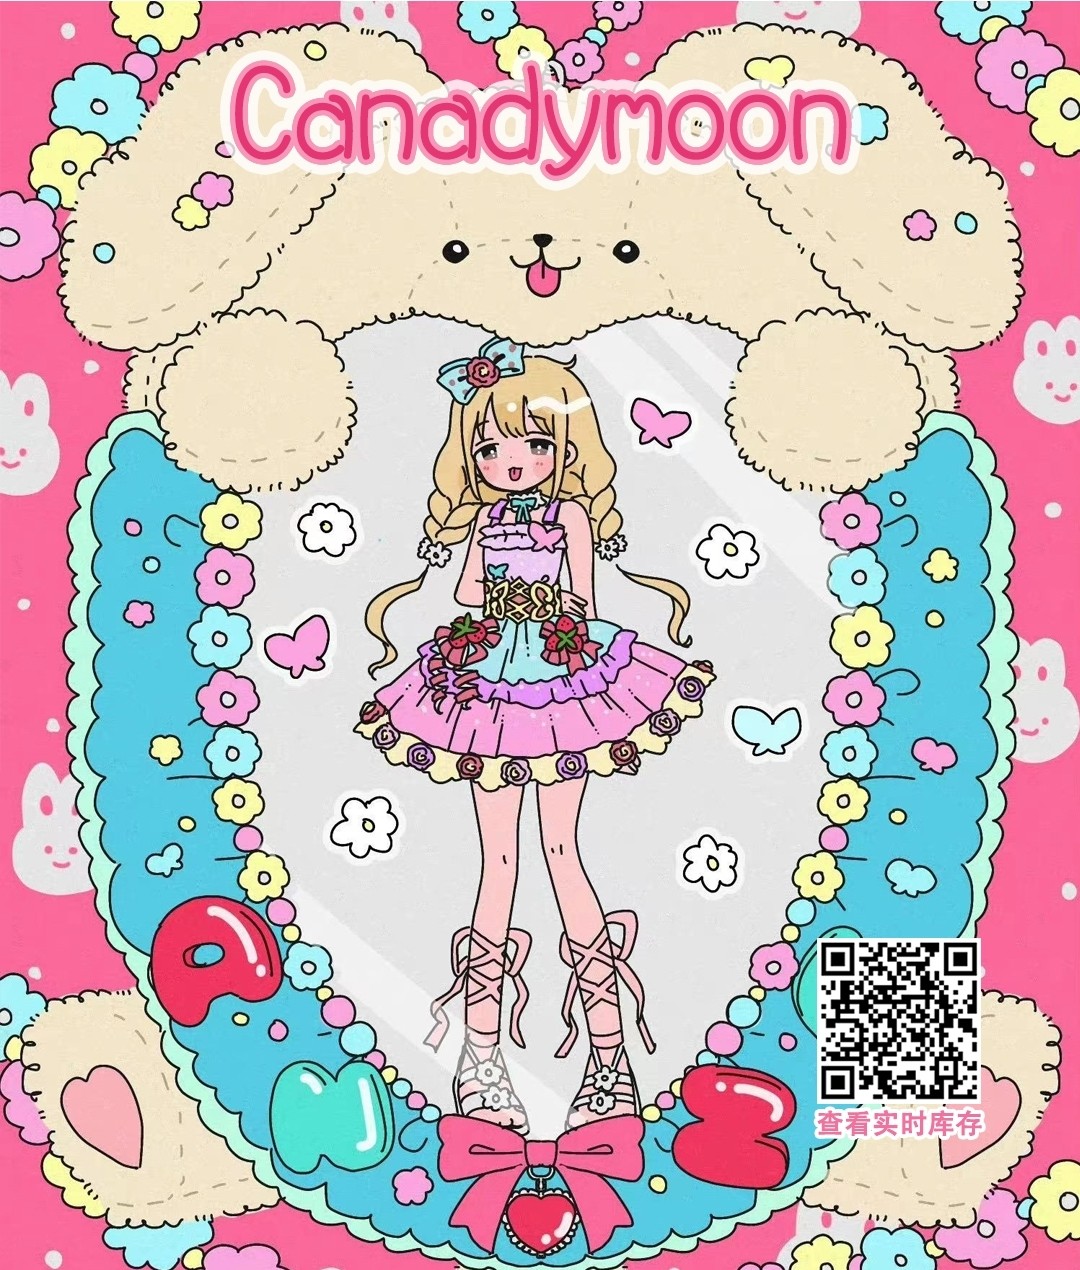 【年抛】Candymoon 这只队伍有44位高颜值队员